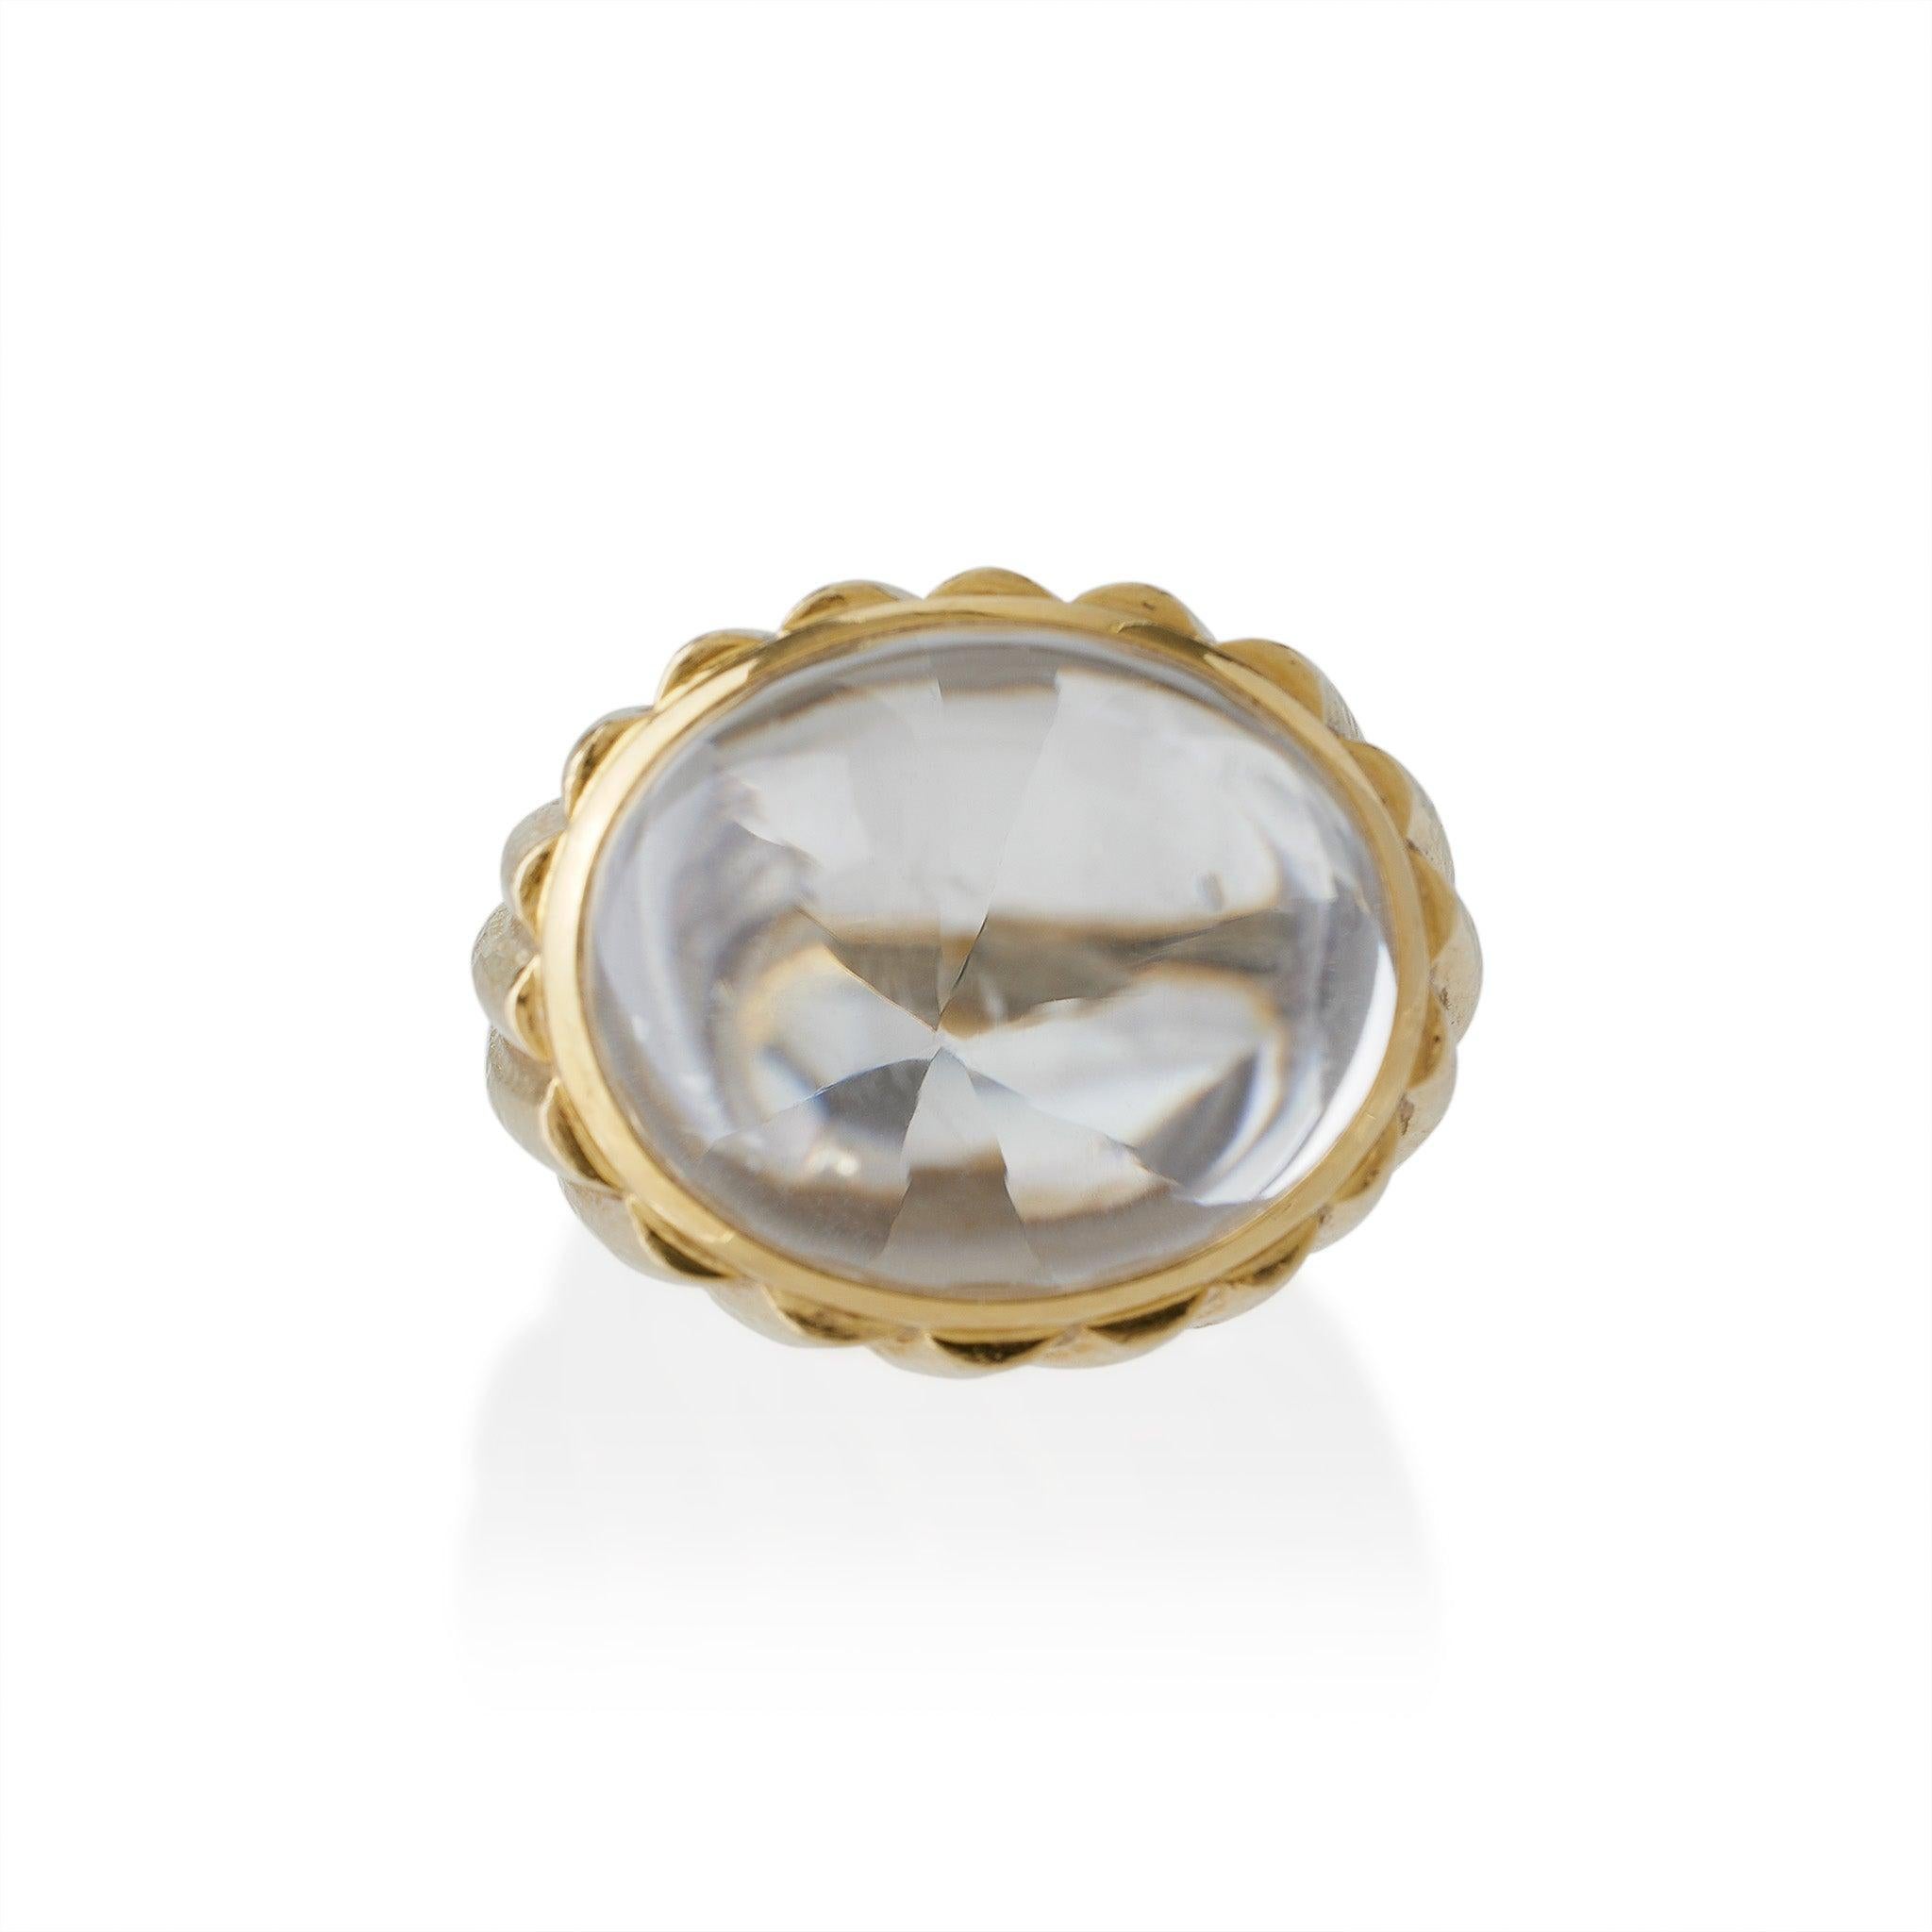 Dieser Ring aus gehämmertem 18-karätigem Gold und Bergkristall-Bombé stammt aus den 1960er bis 1970er Jahren und wurde von David Webb, New York, entworfen. Der Ring ist mit einem hochgewölbten Bergkristall-Cabochon mit einem facettierten Pavillon